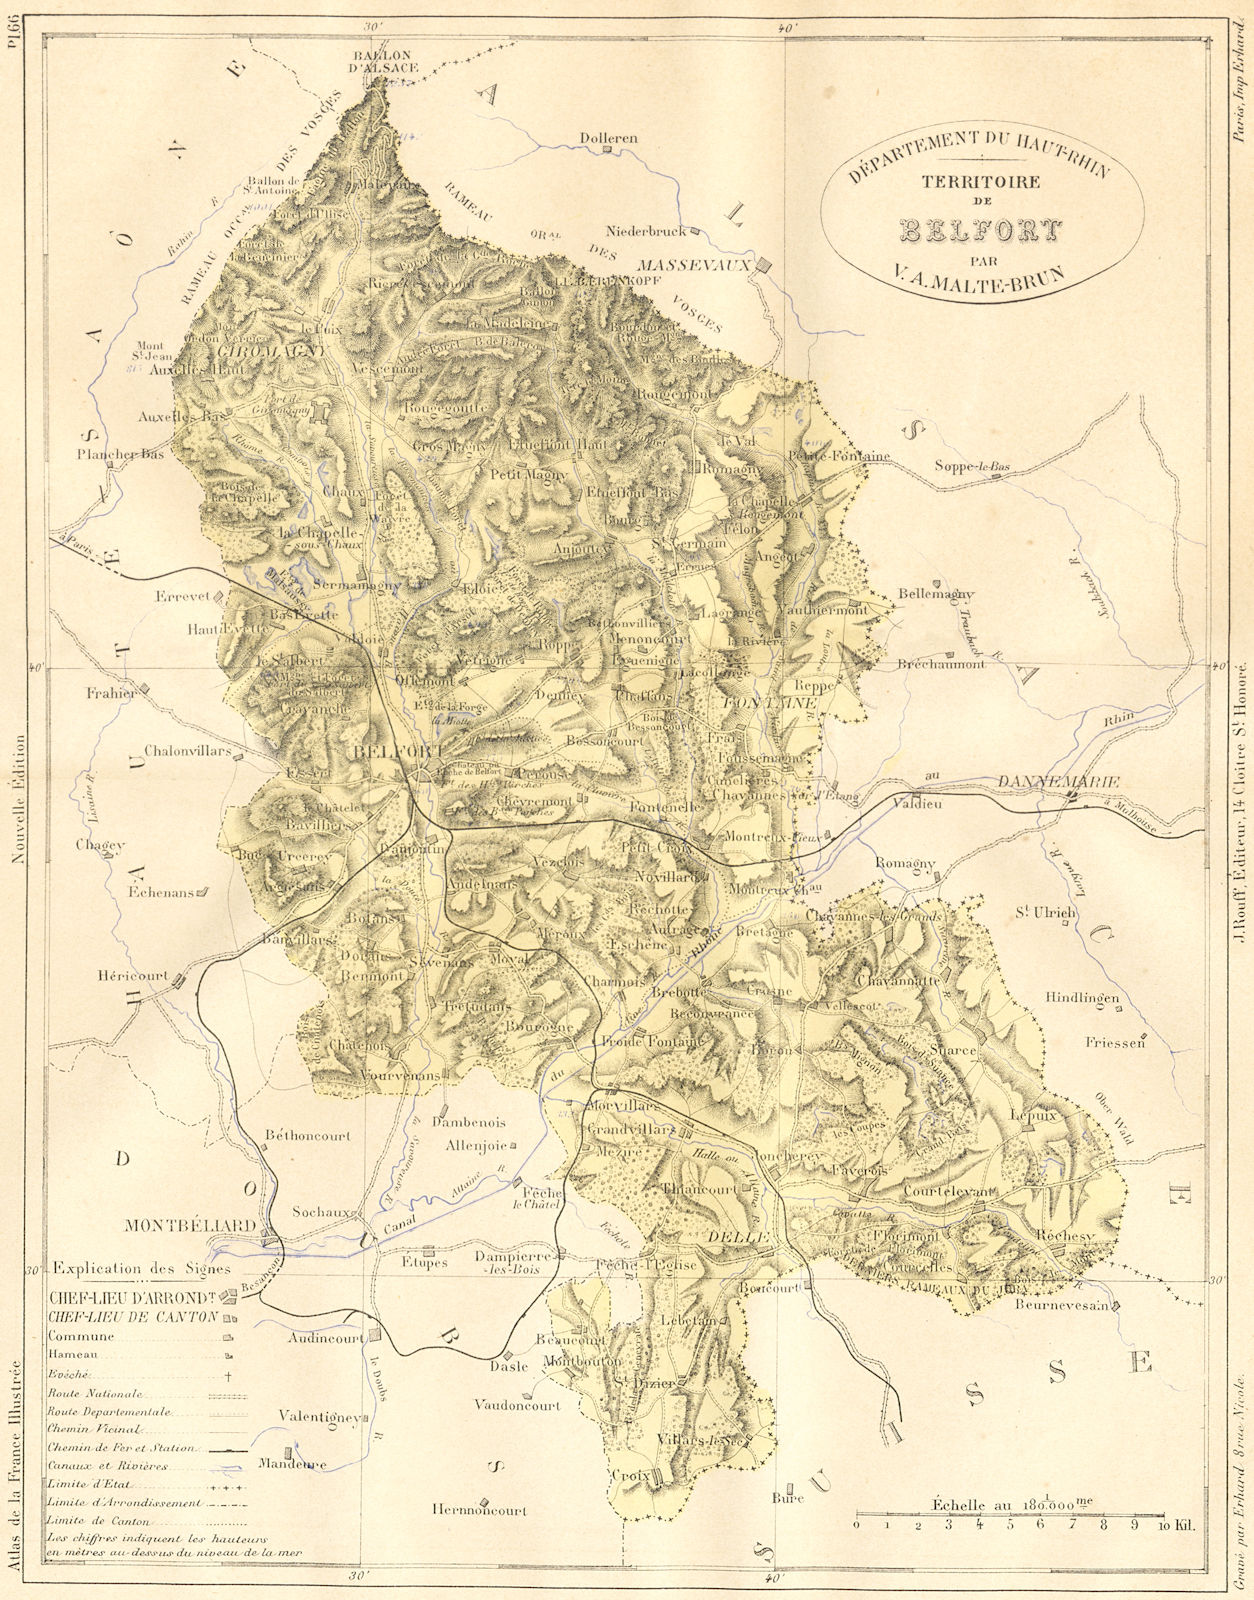 HAUT-RHIN. Departement du-Territoire de Belfort 1883 old antique map chart